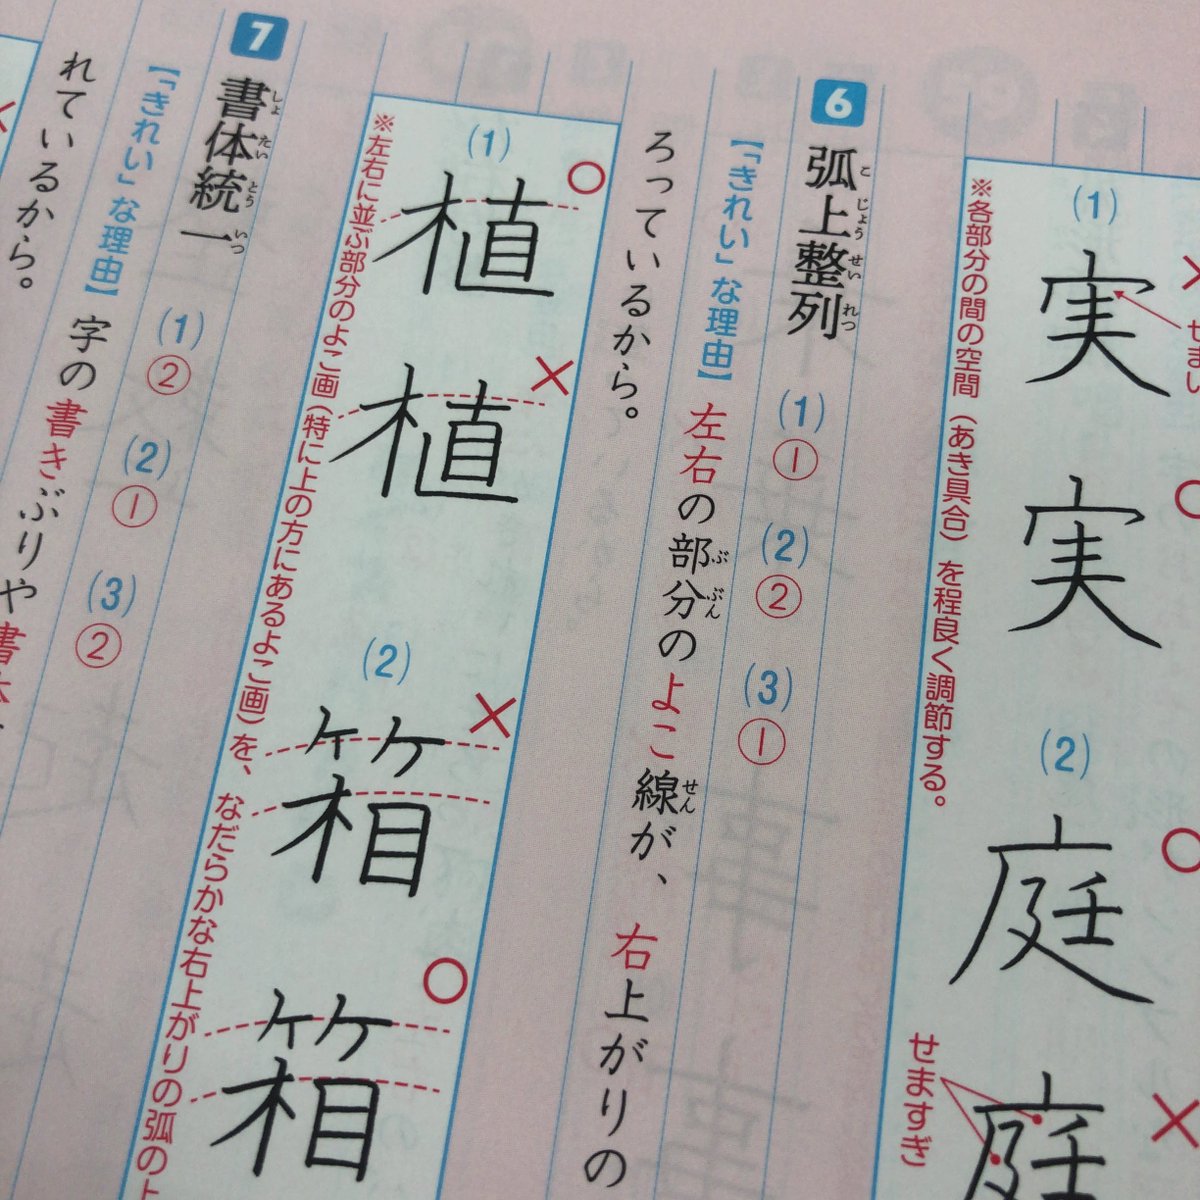 東進ブックス 東進ブックス リーダードリル 漢字 のここが凄い その7 巻末には きれいな字のひみつ を掲載 きれいな 字を書くコツが分かりやすく説明されているので 小学生から大人まで きれいな字を書きたい人は必見です 読めば実際に書いてみ